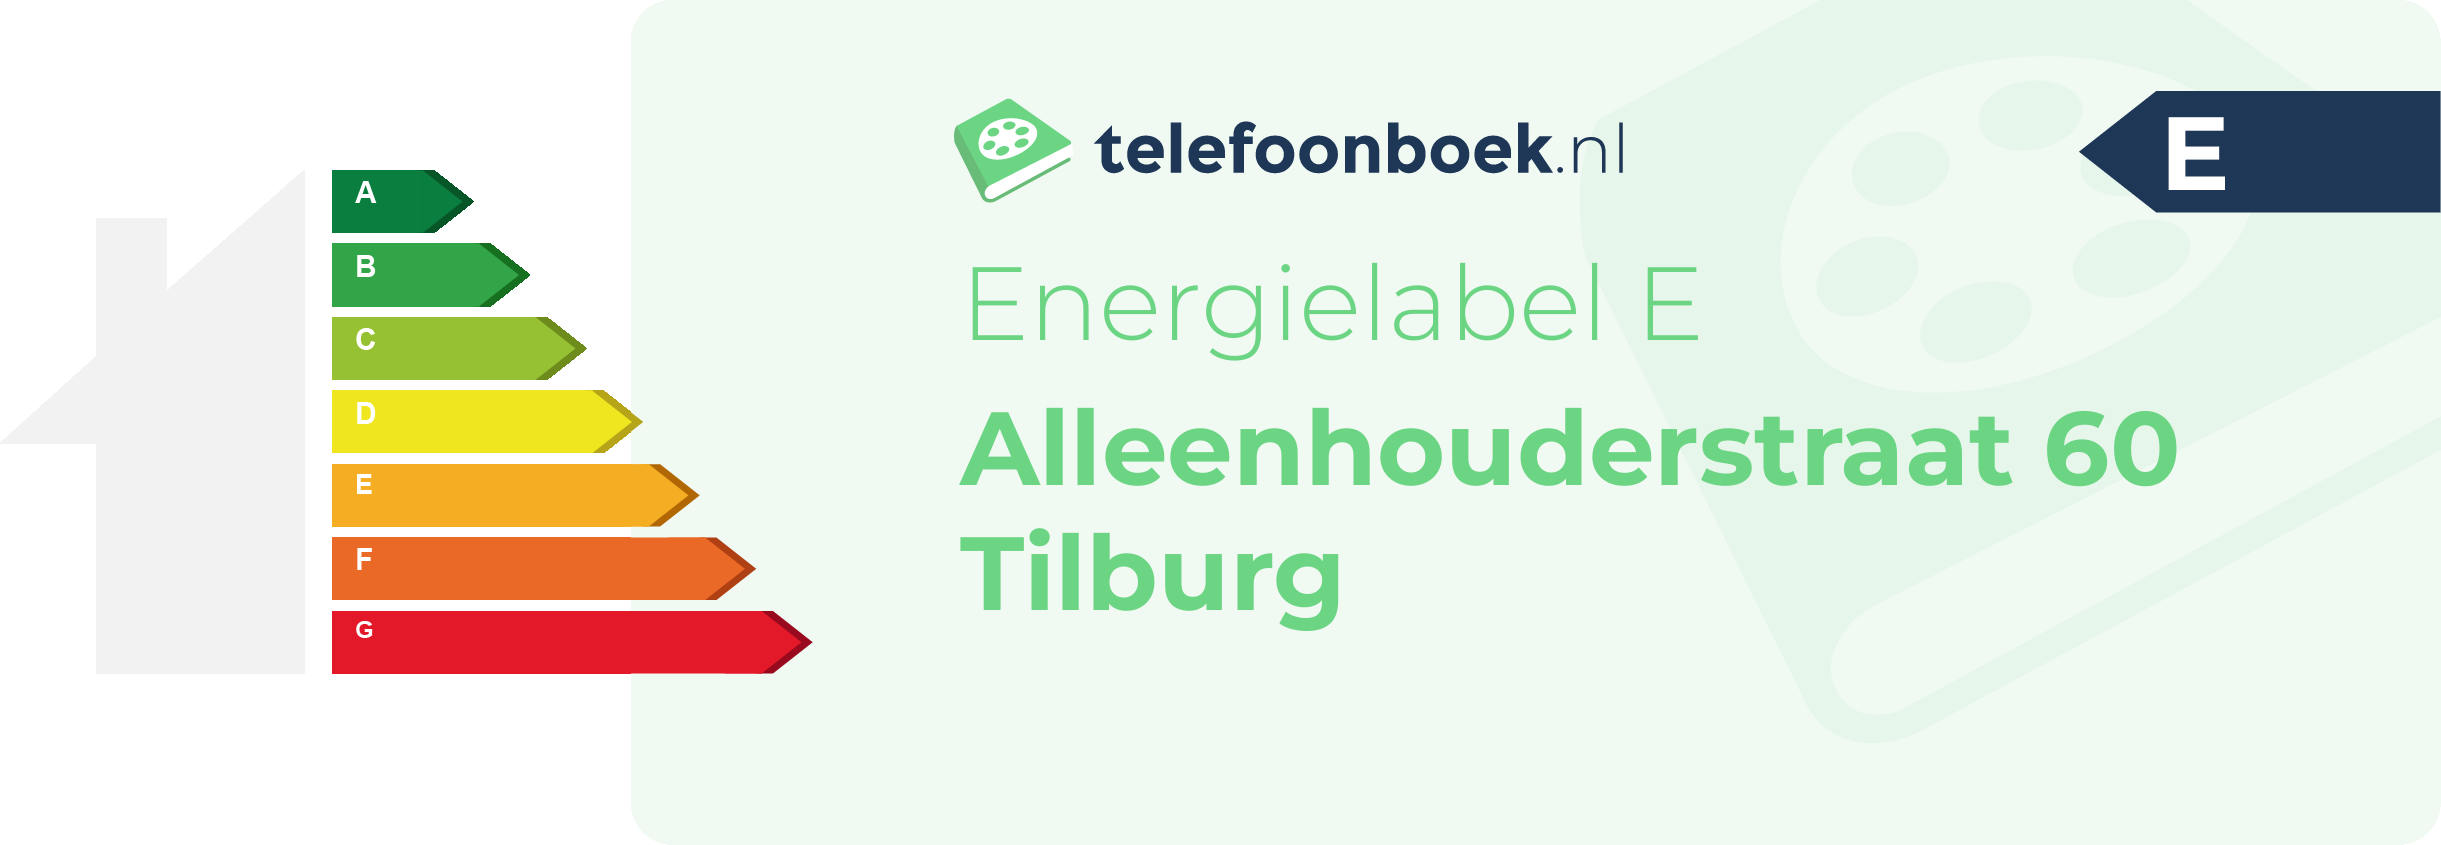 Energielabel Alleenhouderstraat 60 Tilburg